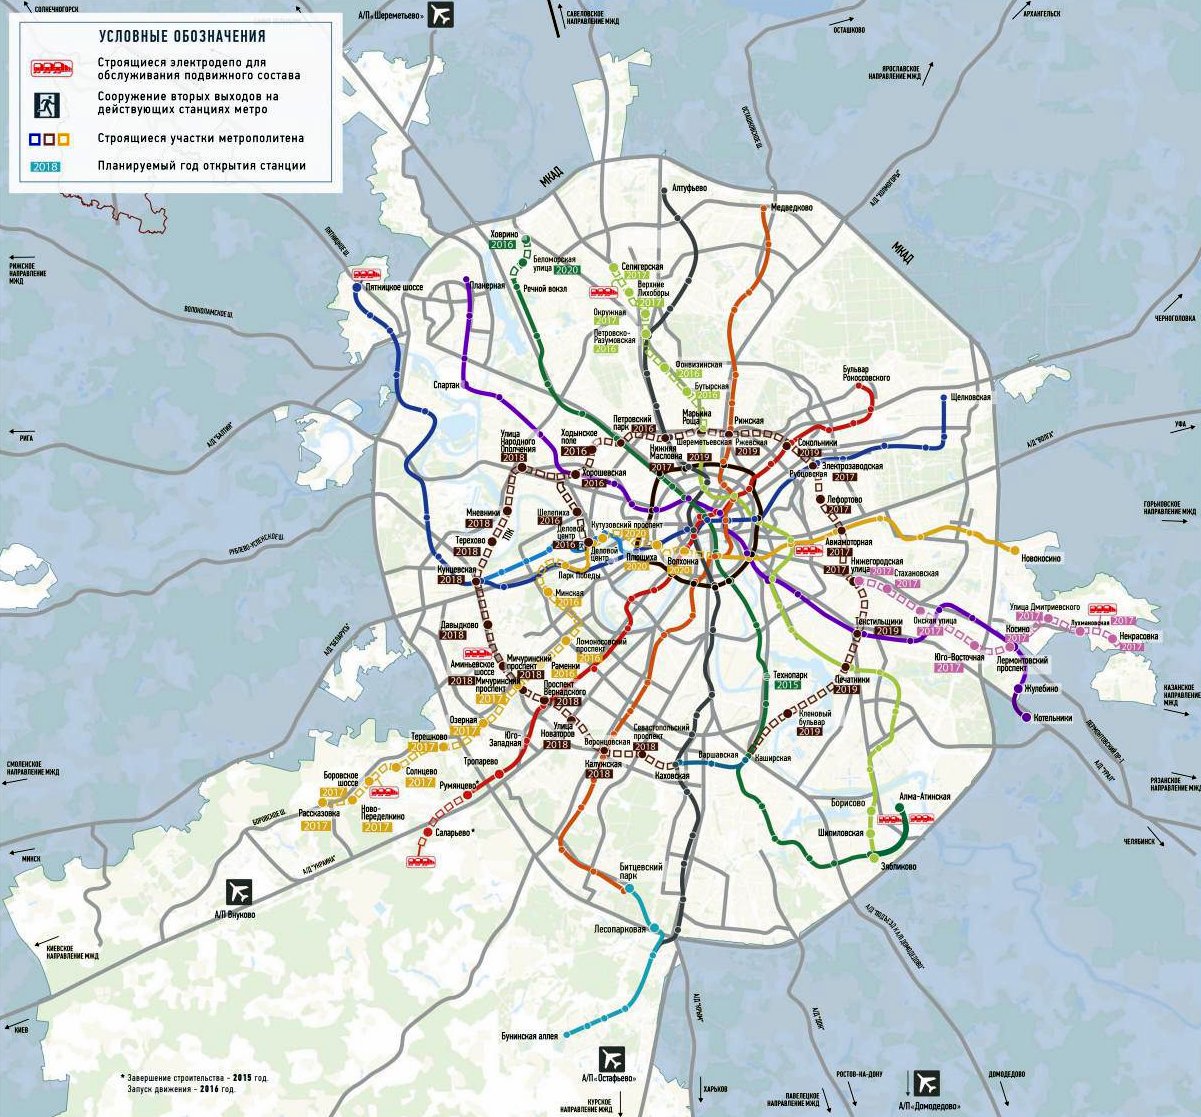 карта-схема московского метрополитена 2020 как платить через приложение отп кредит